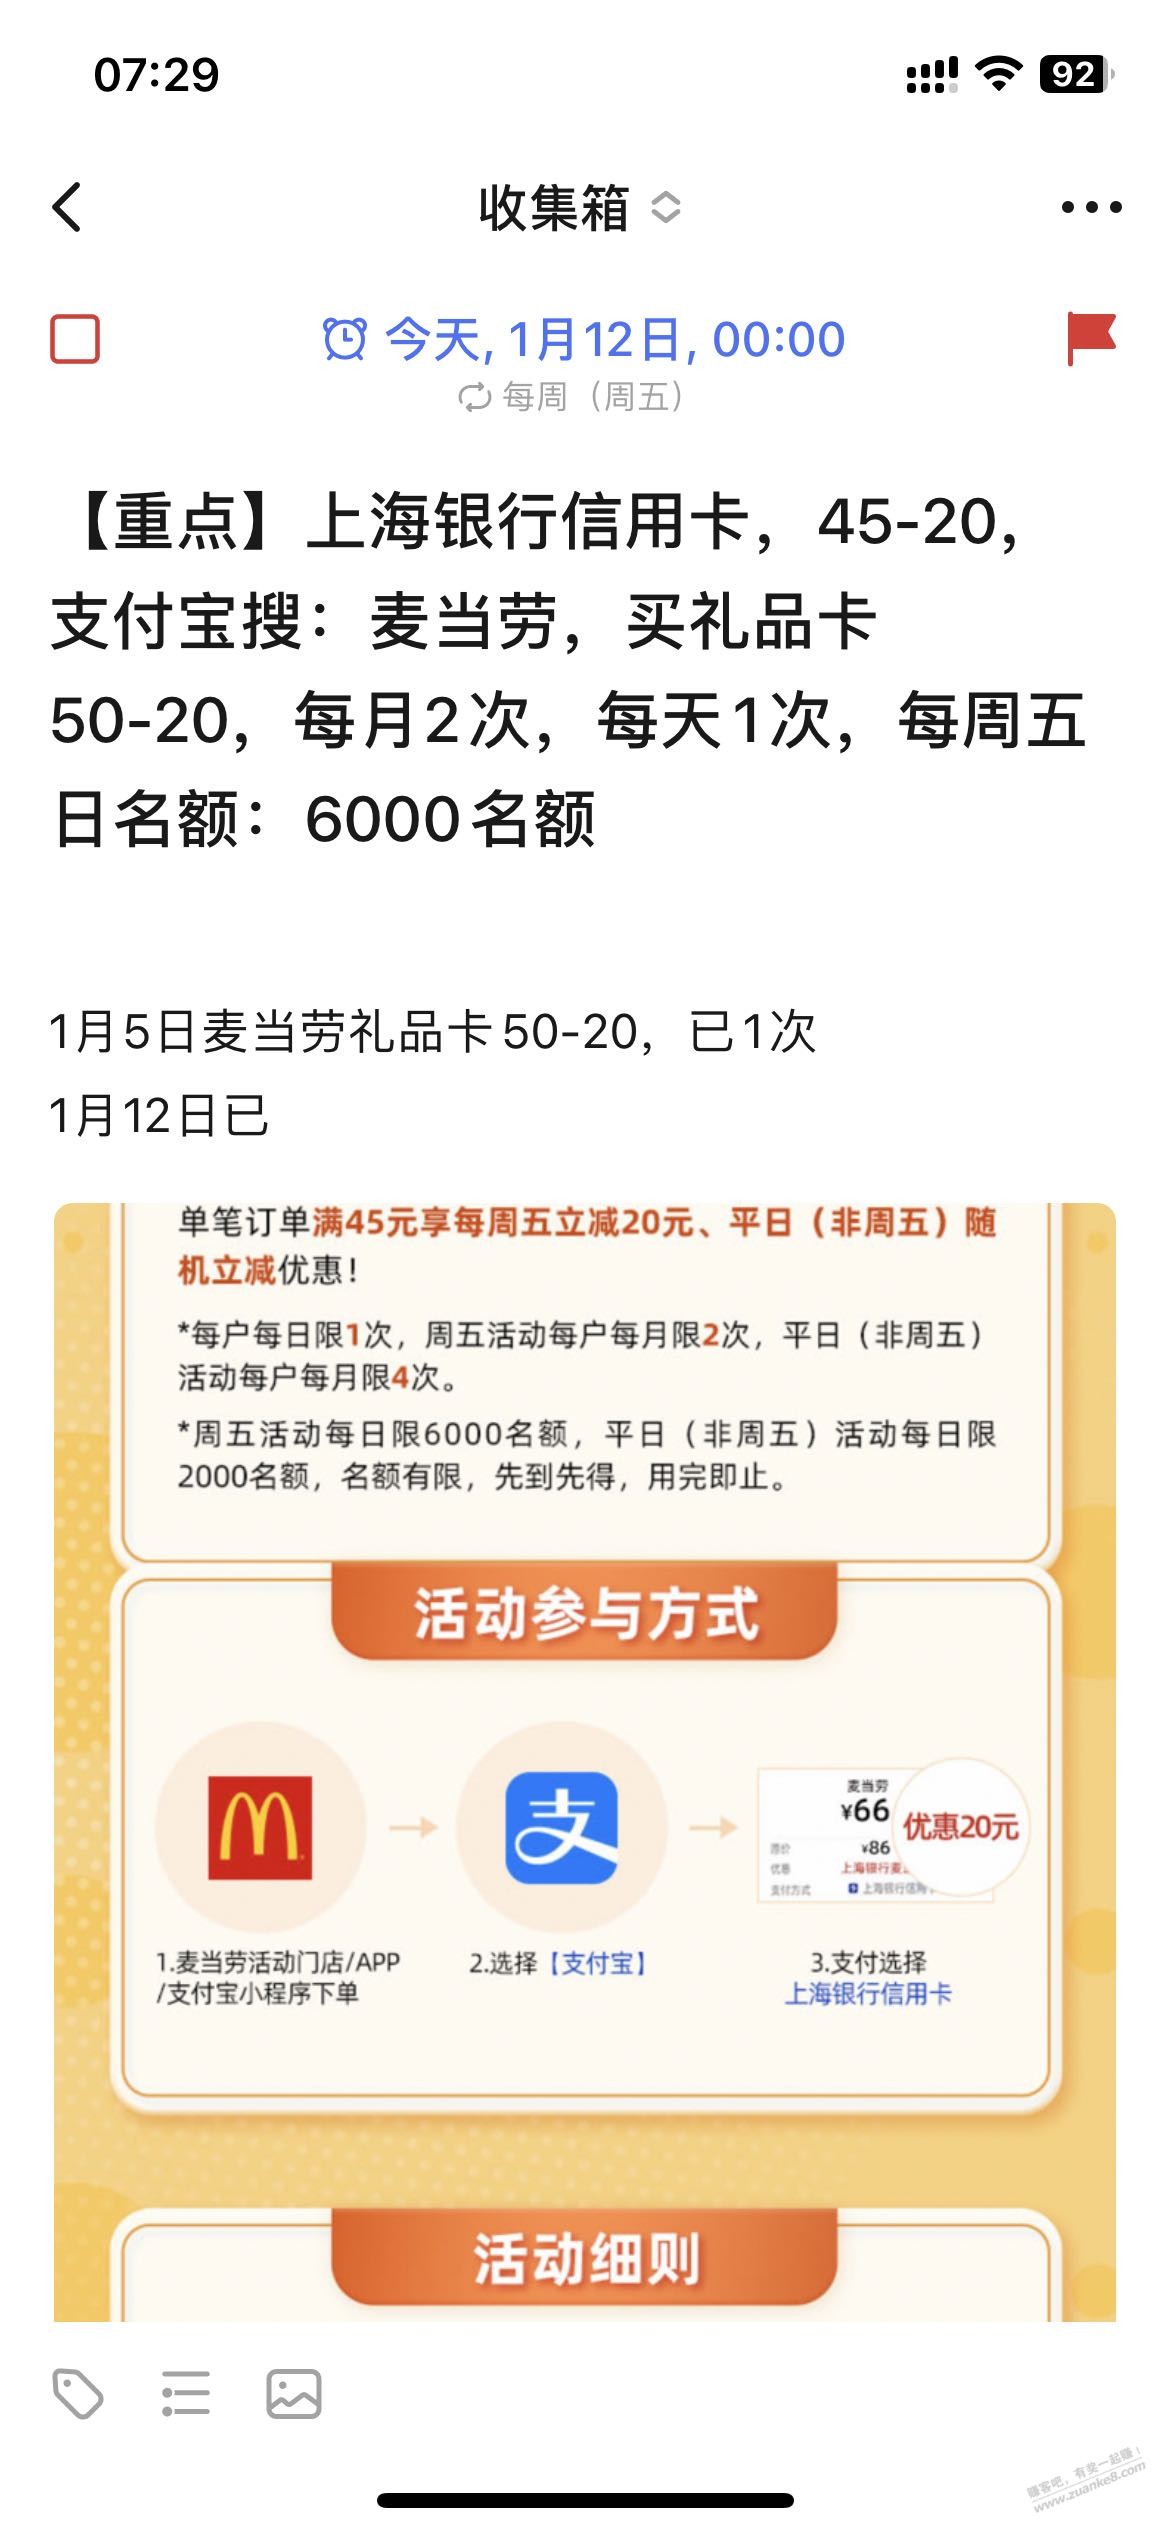 ……上海xing/用卡 50-20 麦当劳礼品卡-润15.8-惠小助(52huixz.com)